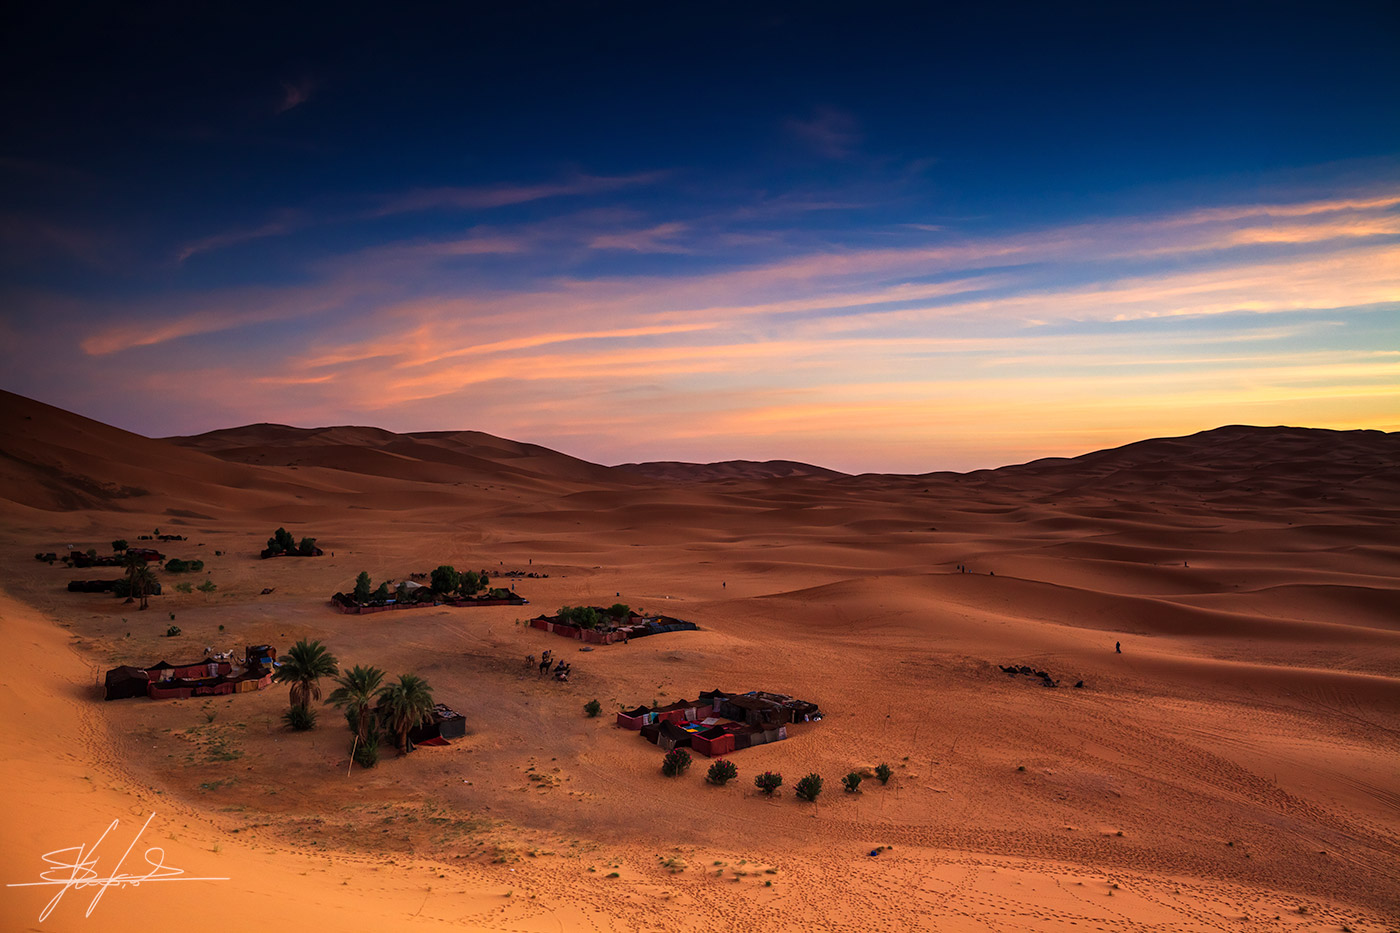 Sunrise in the Sahara Desert...